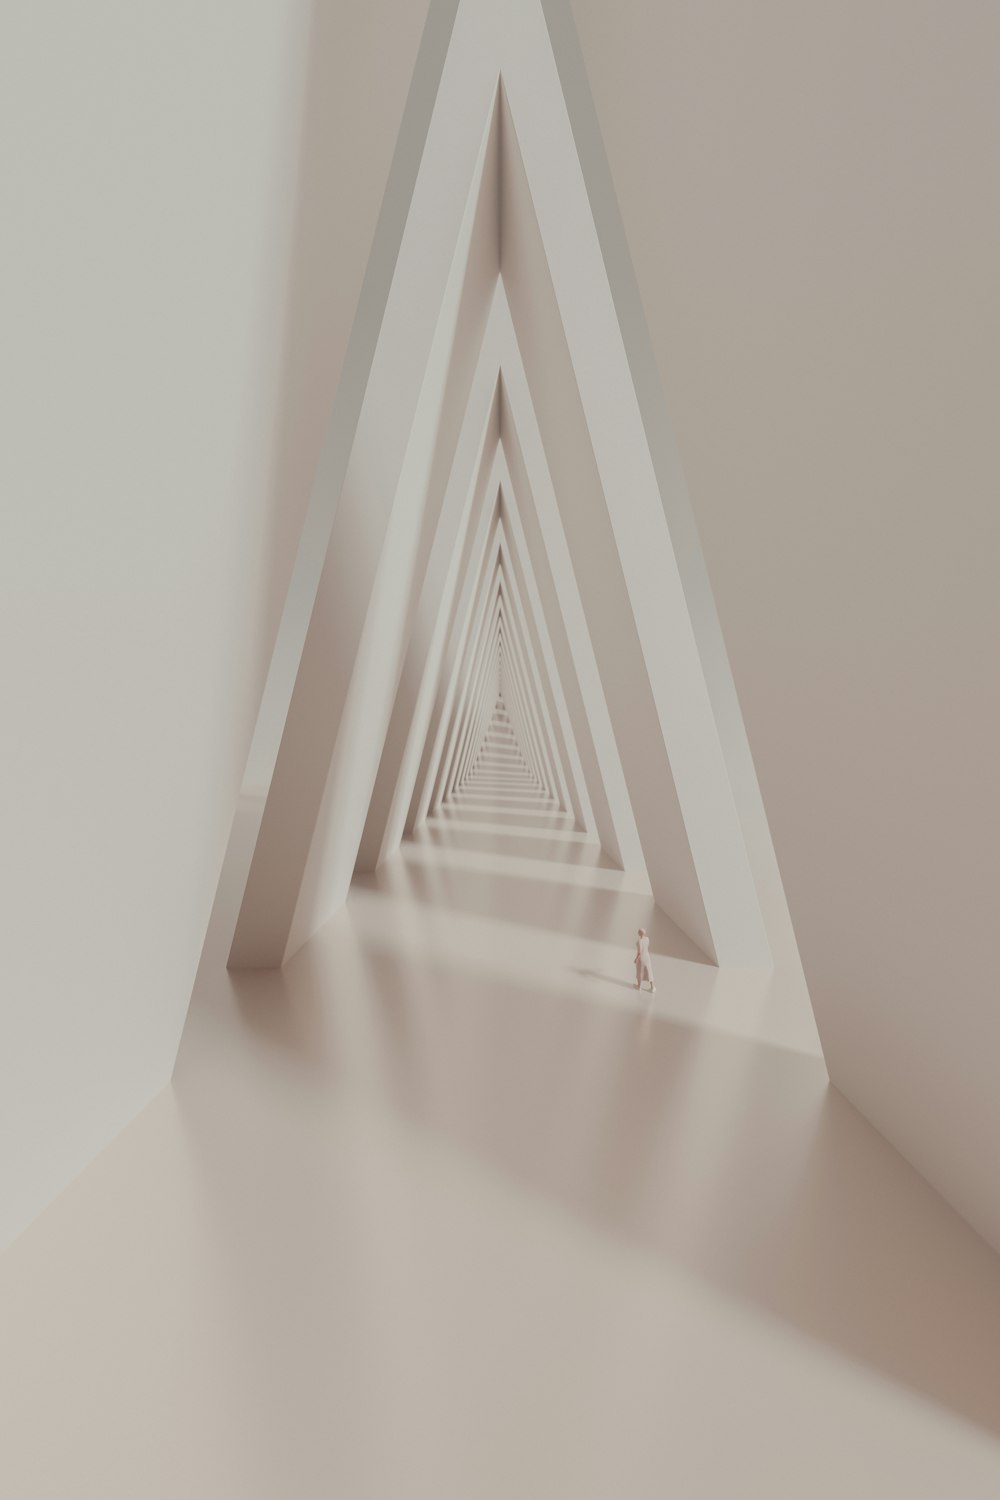 uma sala branca com uma parede em forma de triângulo